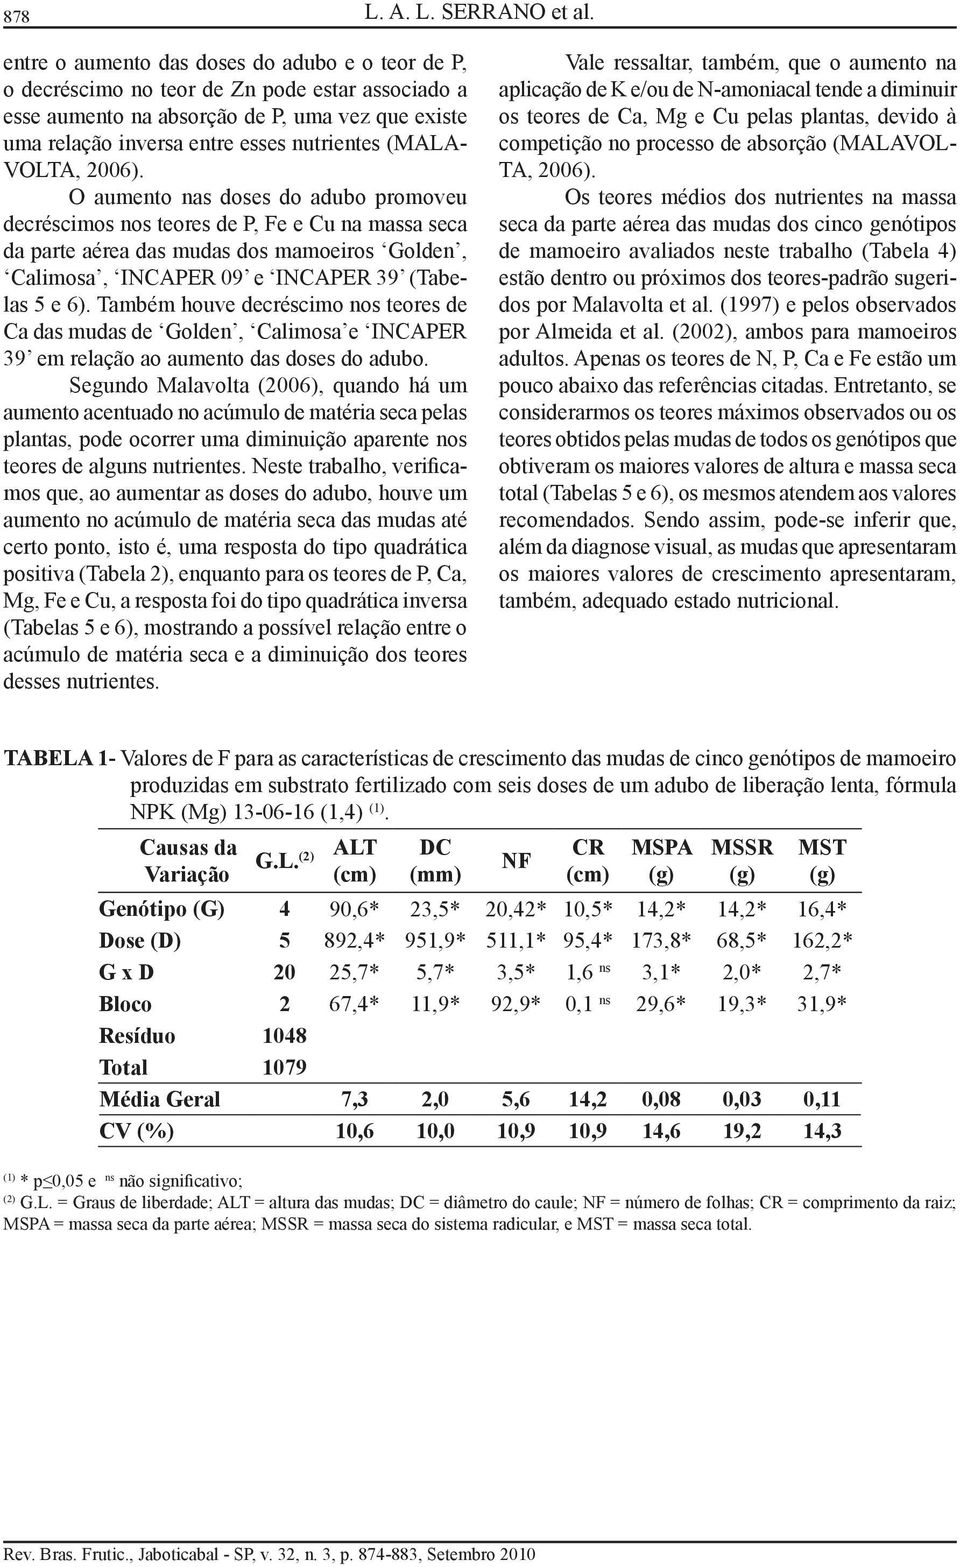 VOLTA, 2006). O aumento nas doses do adubo promoveu decréscimos nos teores de P, Fe e Cu na massa seca da parte aérea das mudas dos mamoeiros Golden, Calimosa, INCAPER 09 e INCAPER 39 (Tabelas 5 e 6).